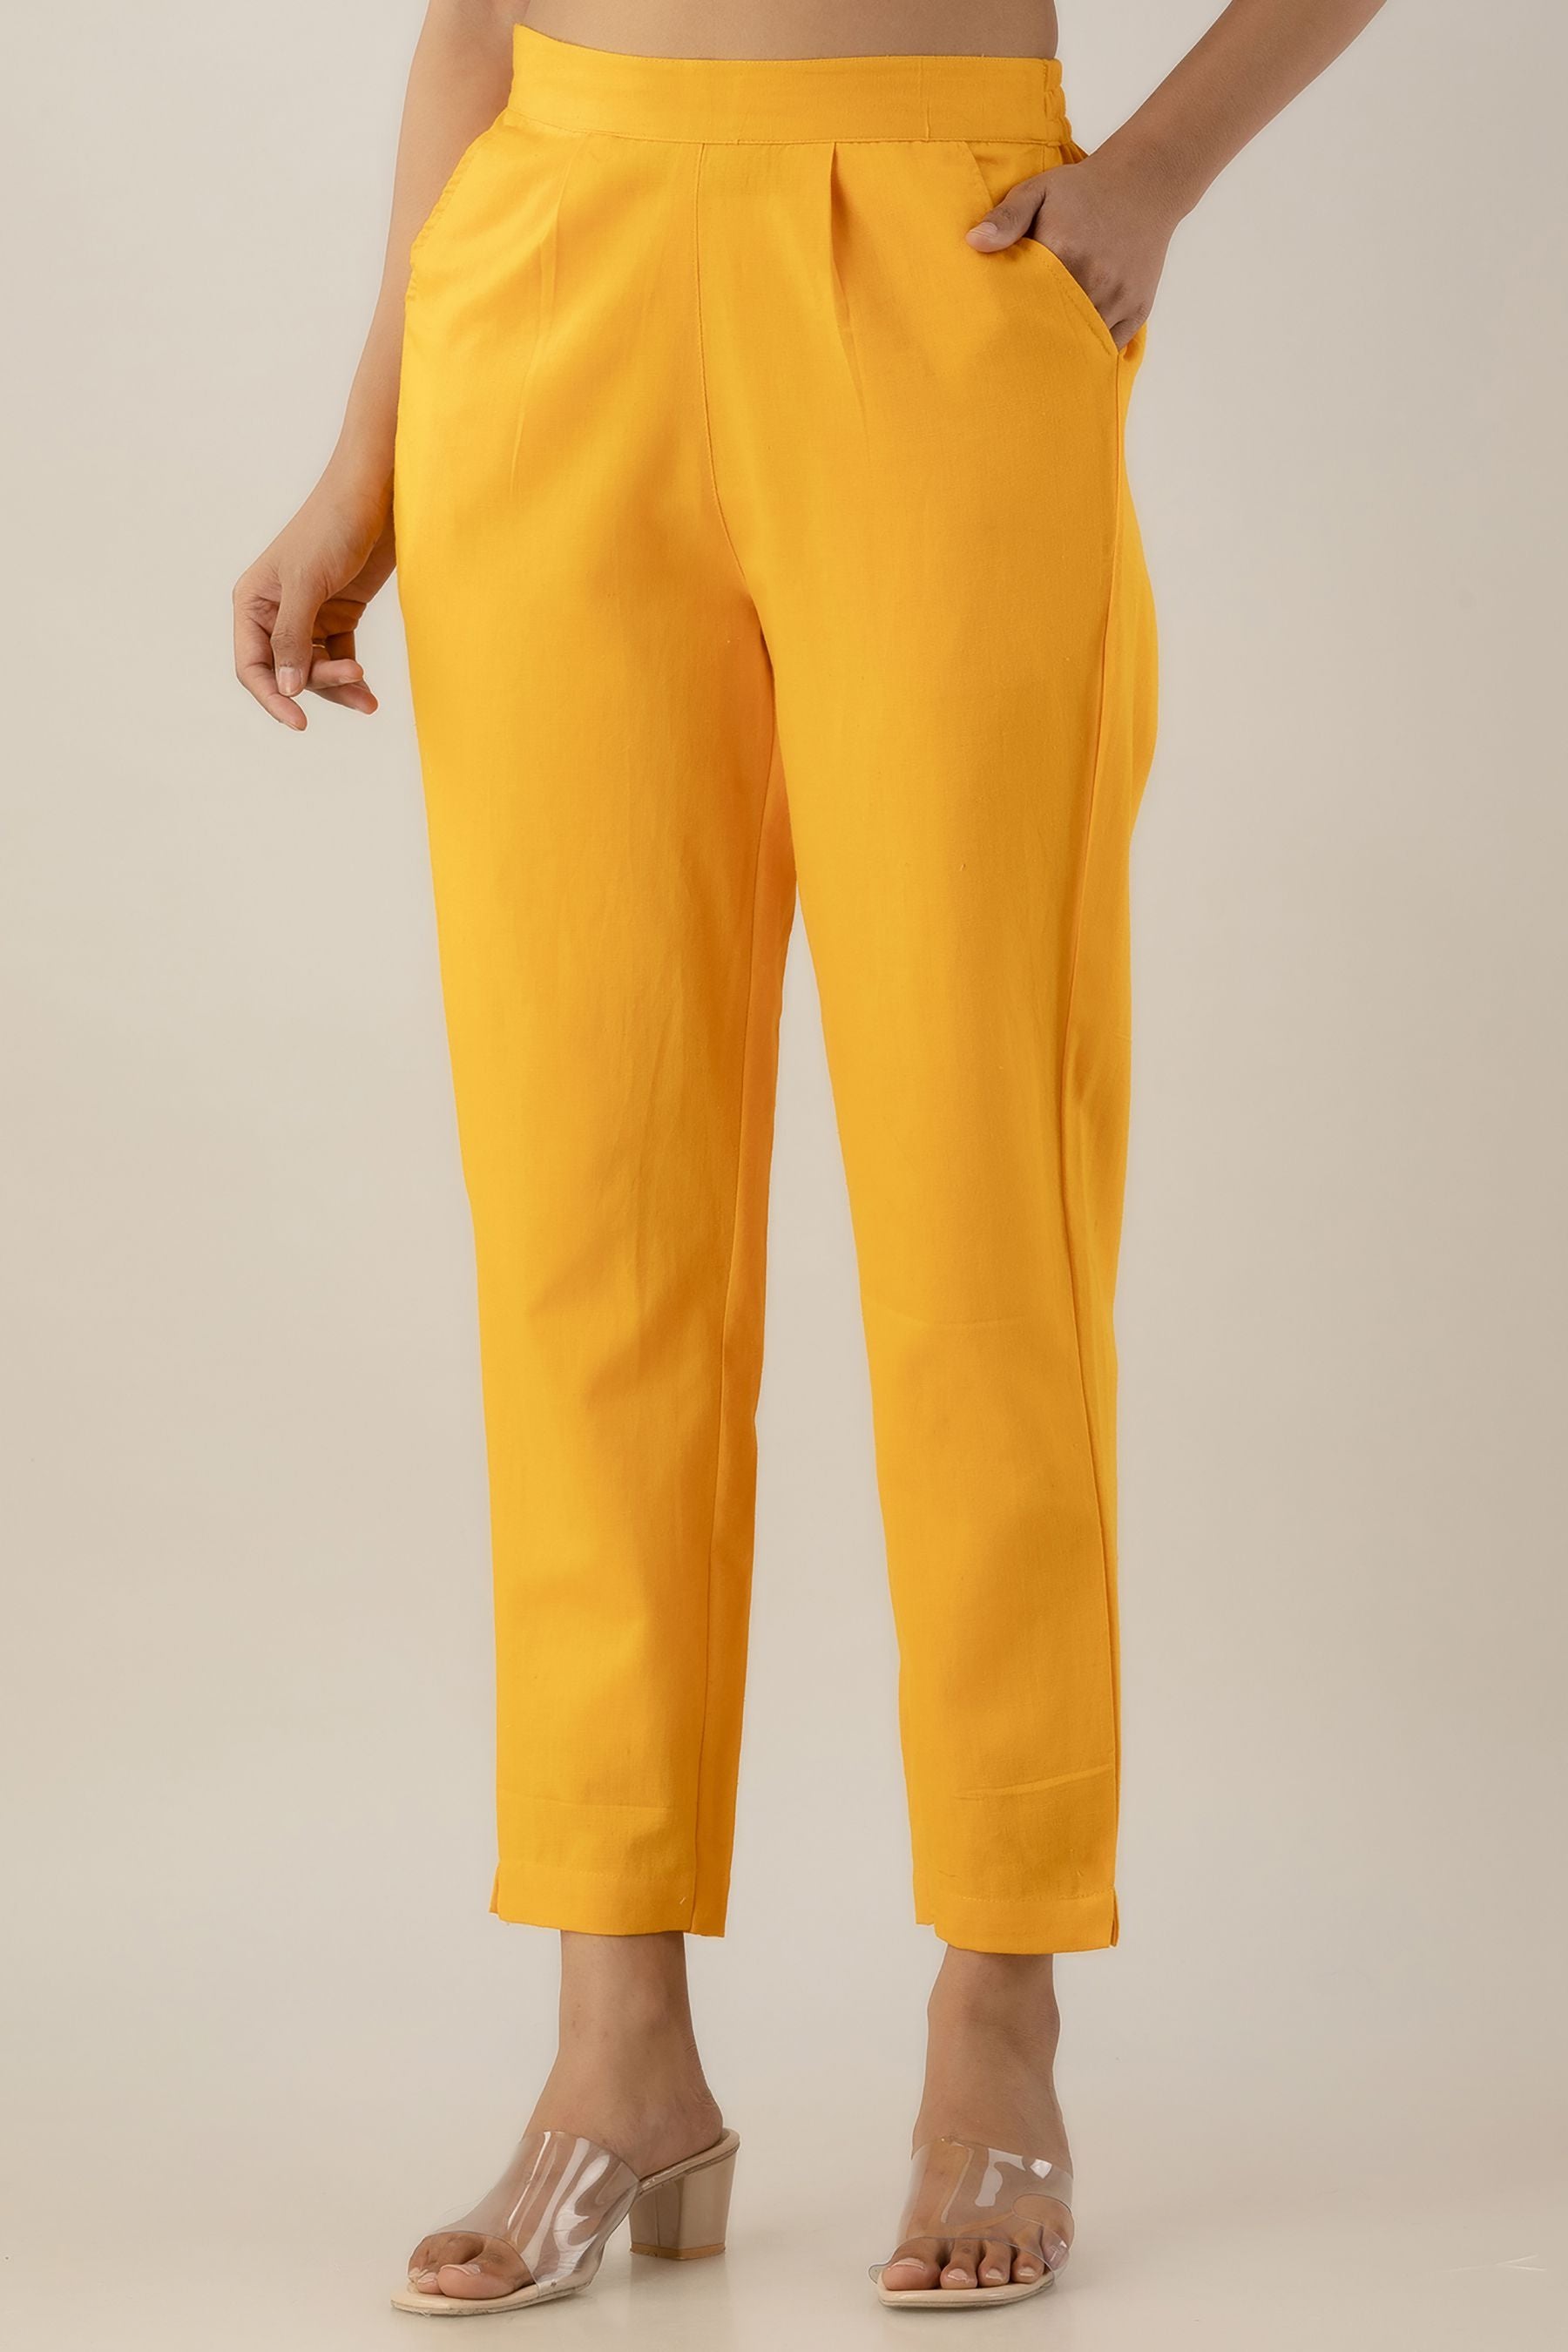 DheerajSharma Turmeric Yellow Trousers at Rs 1899/piece | गर्ल्स ट्राउज़र  in Mumbai | ID: 17135926597